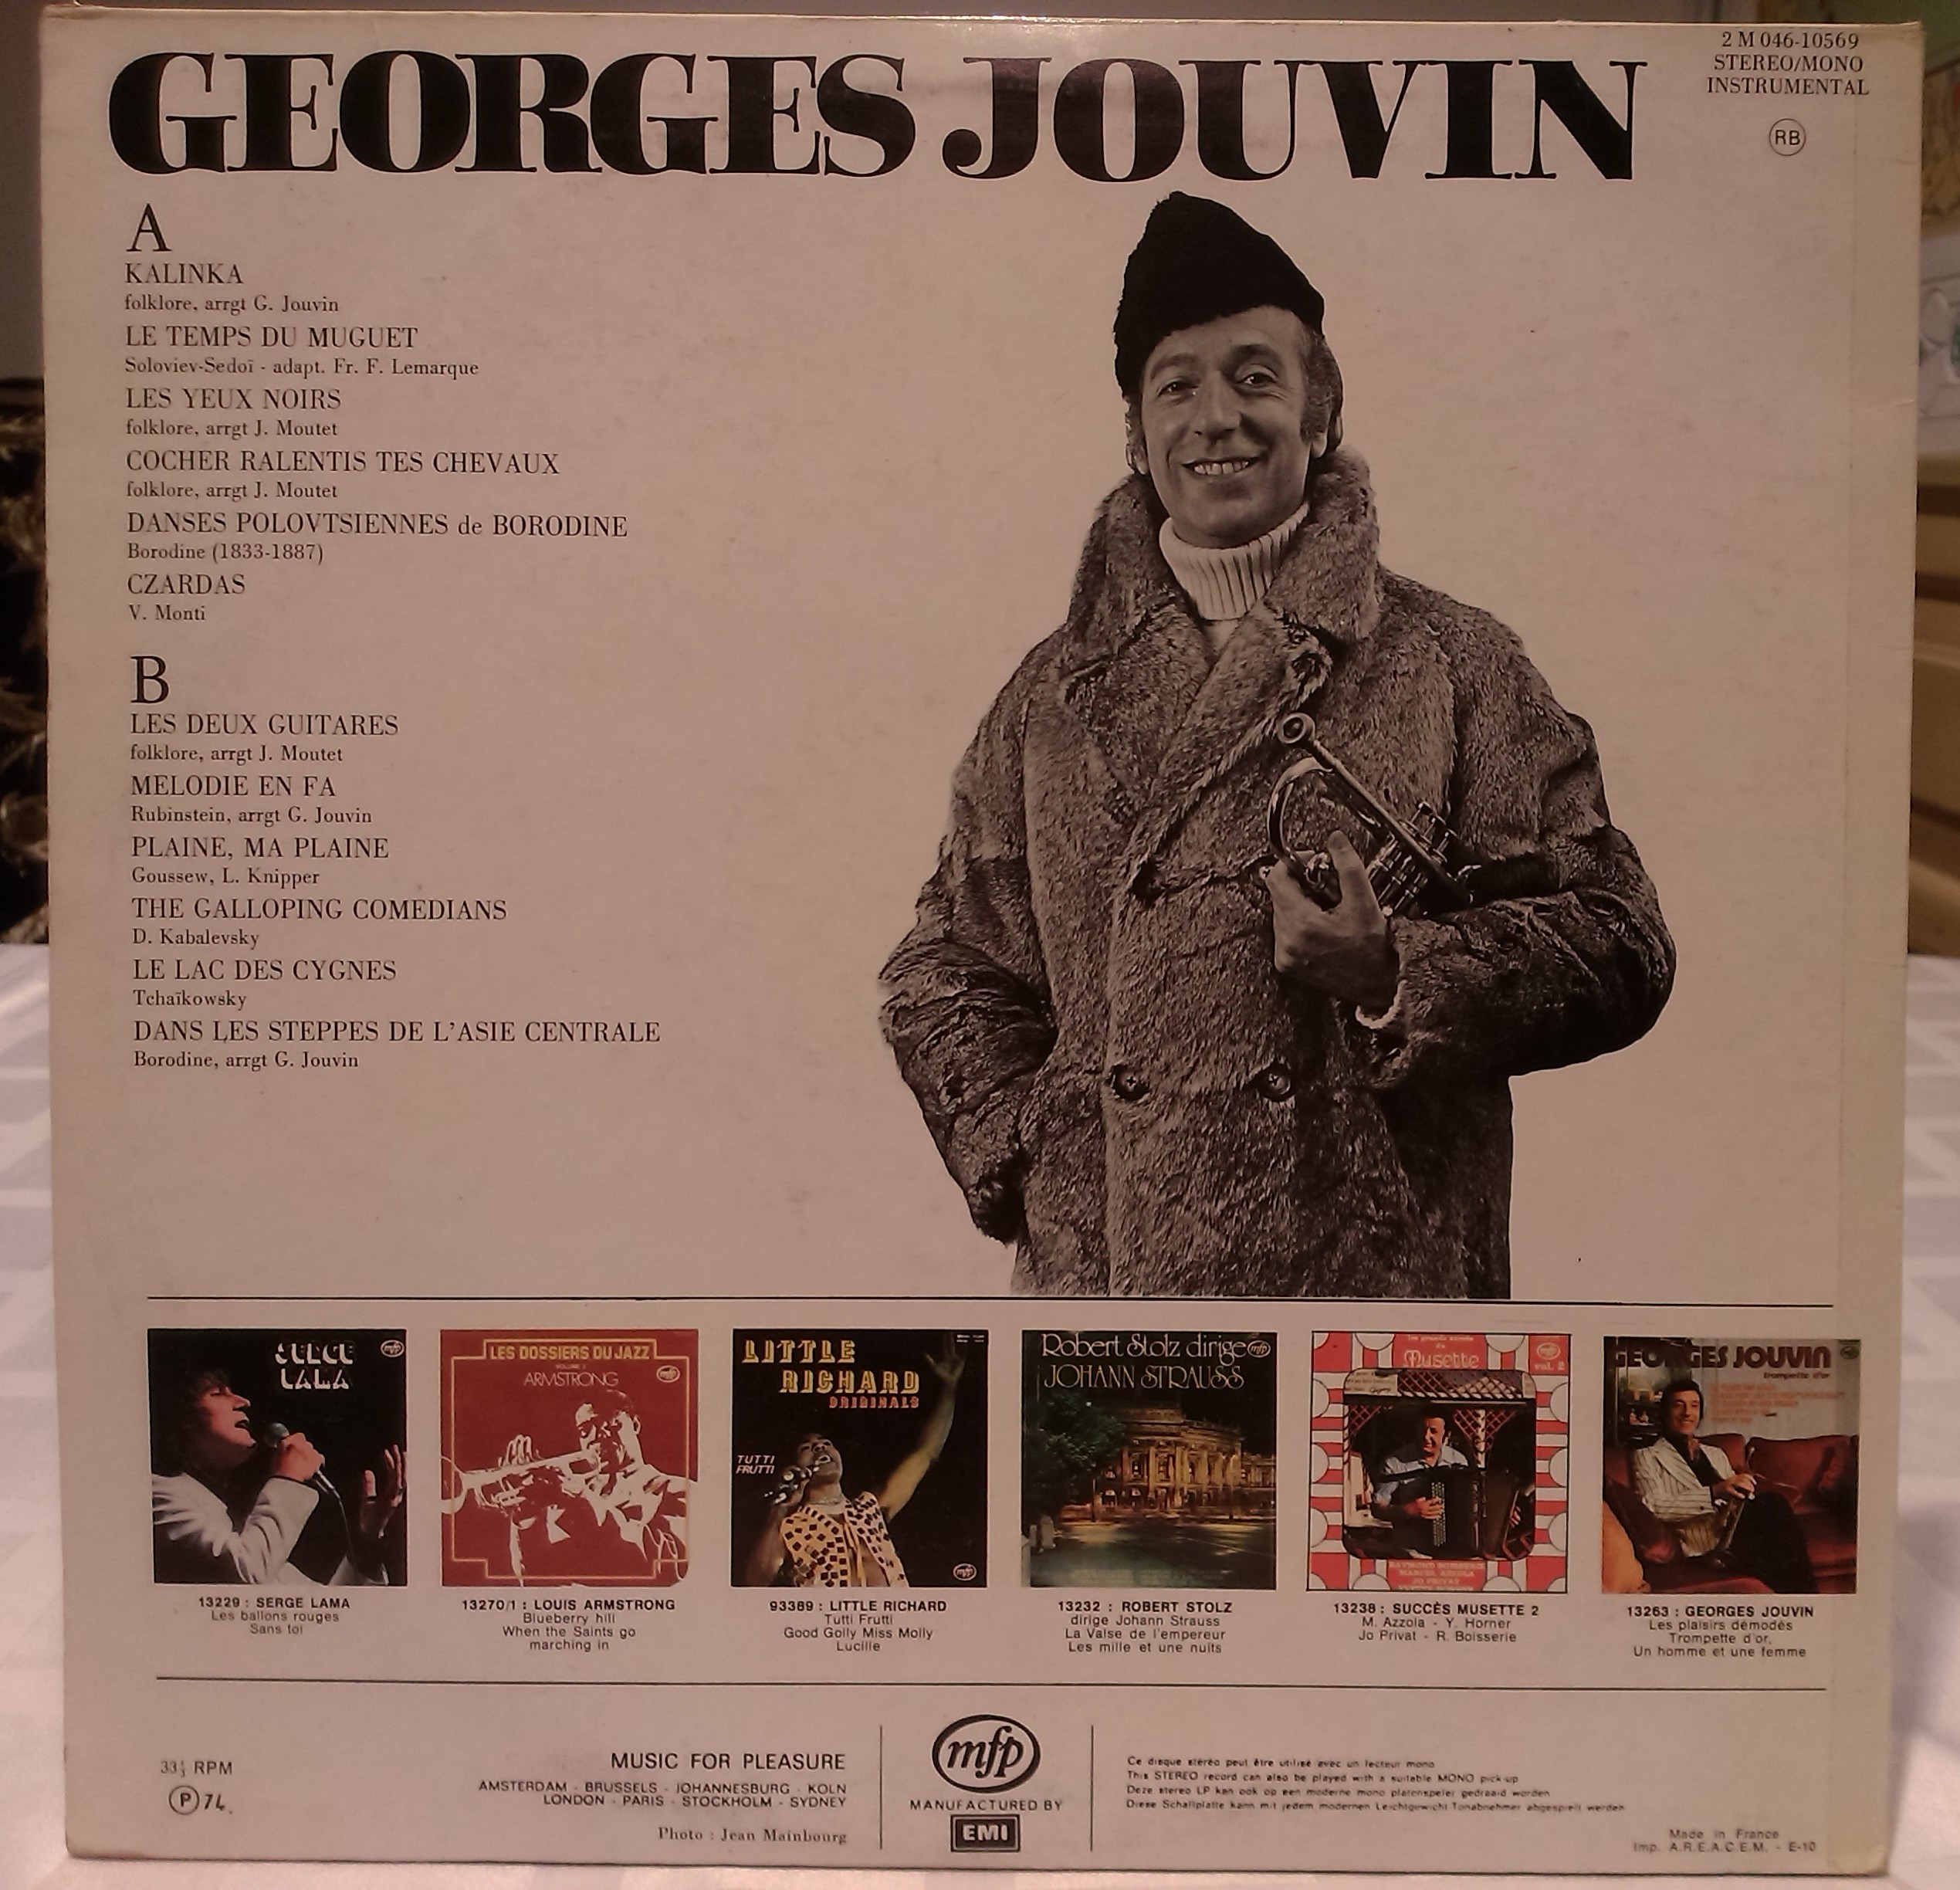 Georges Jouvin Kalinka et autres melodies Russes 1974 LP MFP 2M 046-10.569 back